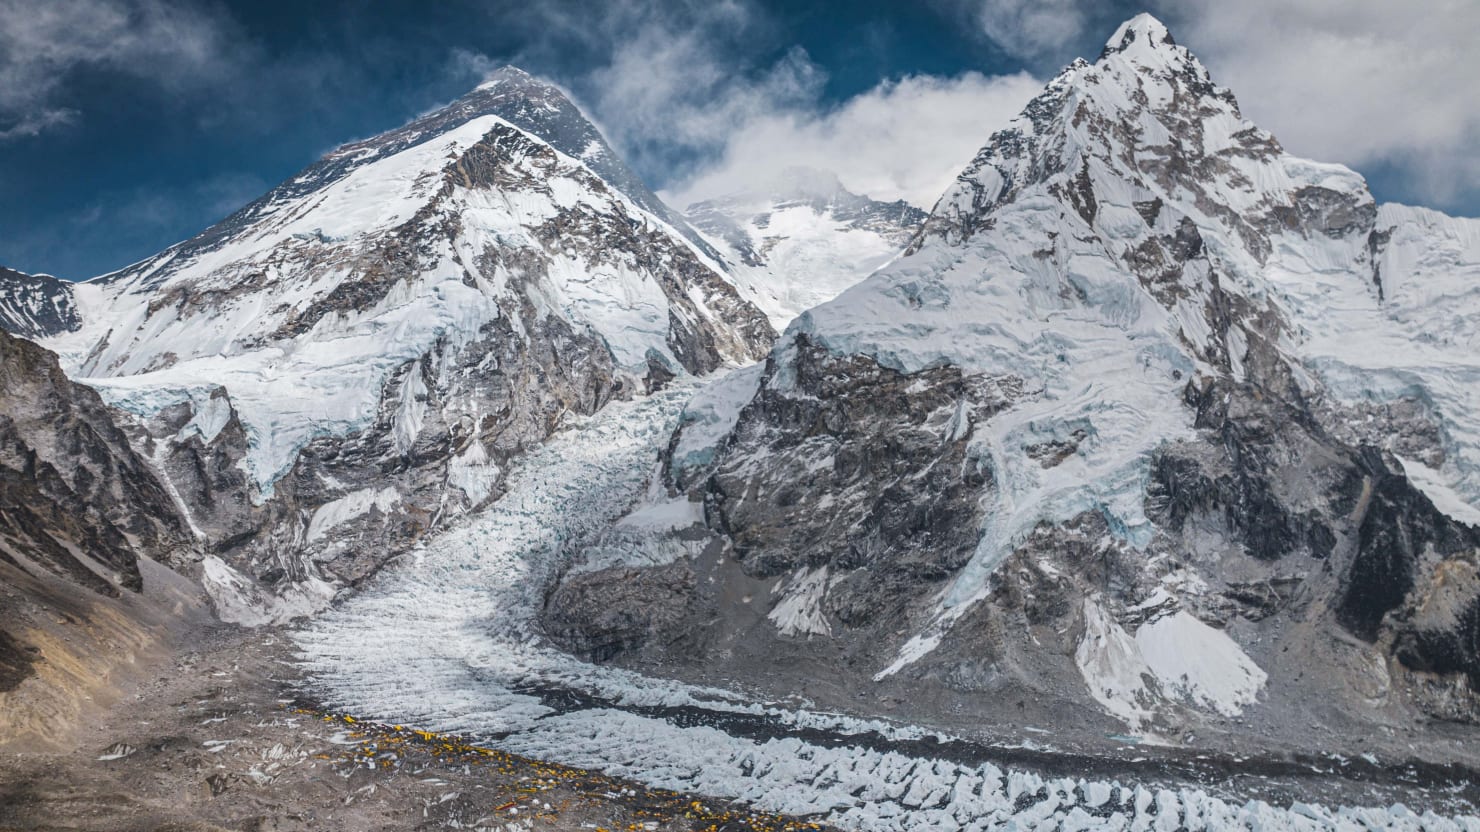 Ponuré novinky o britském horolezci Danielu Paulu Pattersonovi a jeho průvodci, který zmizel na Everestu